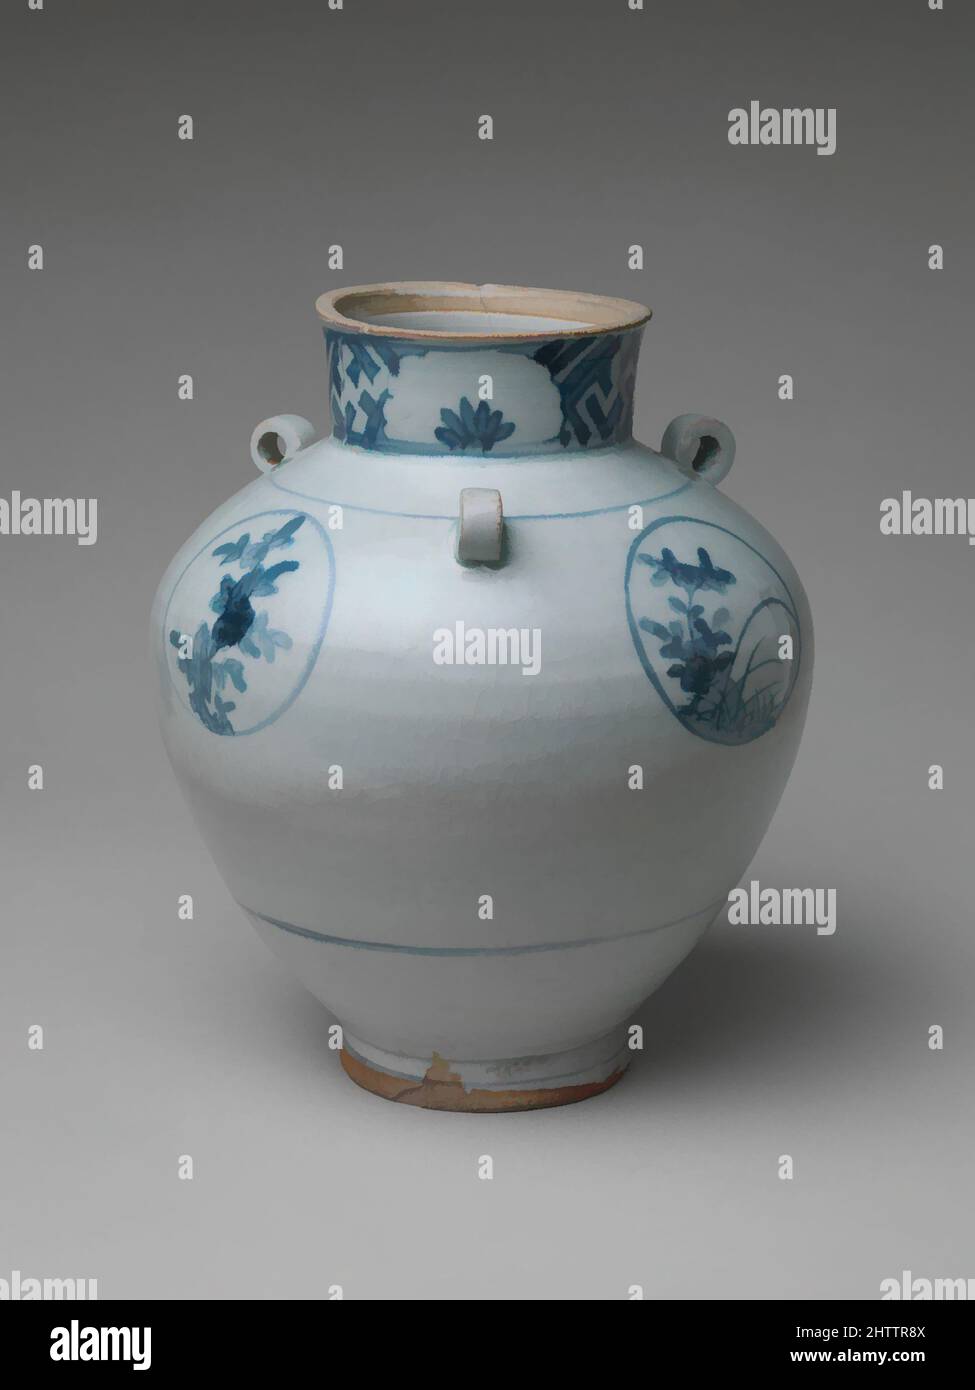 Venta al por mayor de vajilla japonesa Ceramic Relief Flower Shaped Plate -  China Porcelana y vajilla precio